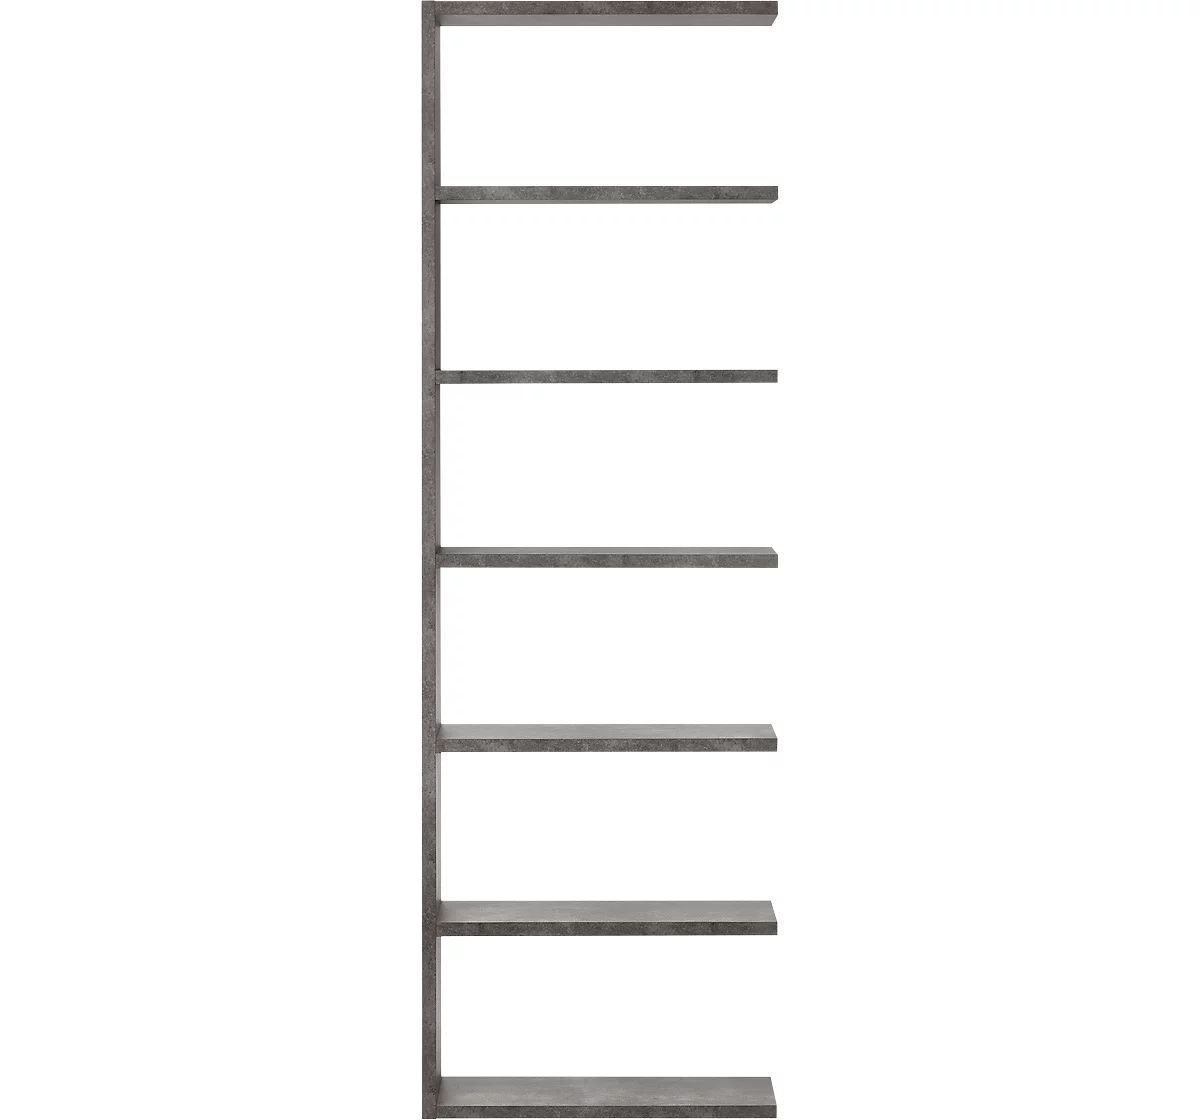 Módulo adicional Pombal, para estantería Pombal, 6 alturas de archivo, ancho 740 x fondo 340 x alto 2240 mm, tablero de aglomerado, colores concretos